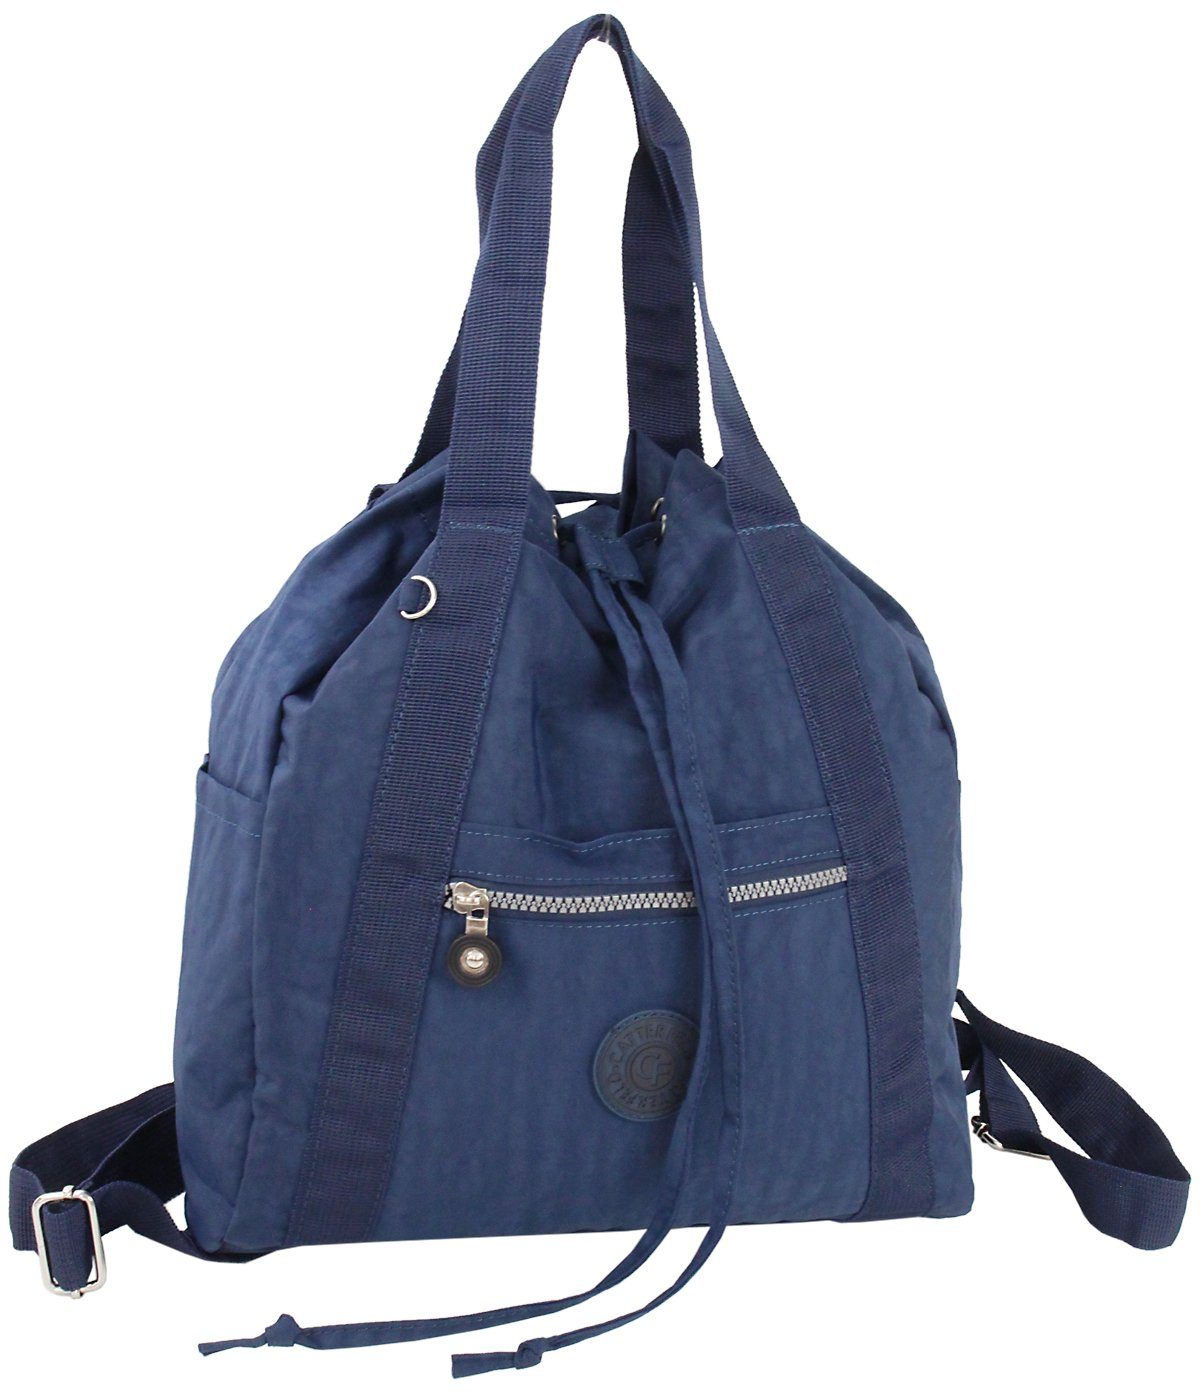 CF CATTERFELD Cityrucksack und Handtasche in Einem, 2in1 leichter Freizeitrucksack/Schultertasche, Leicht Navy-Blau | Rucksacktaschen